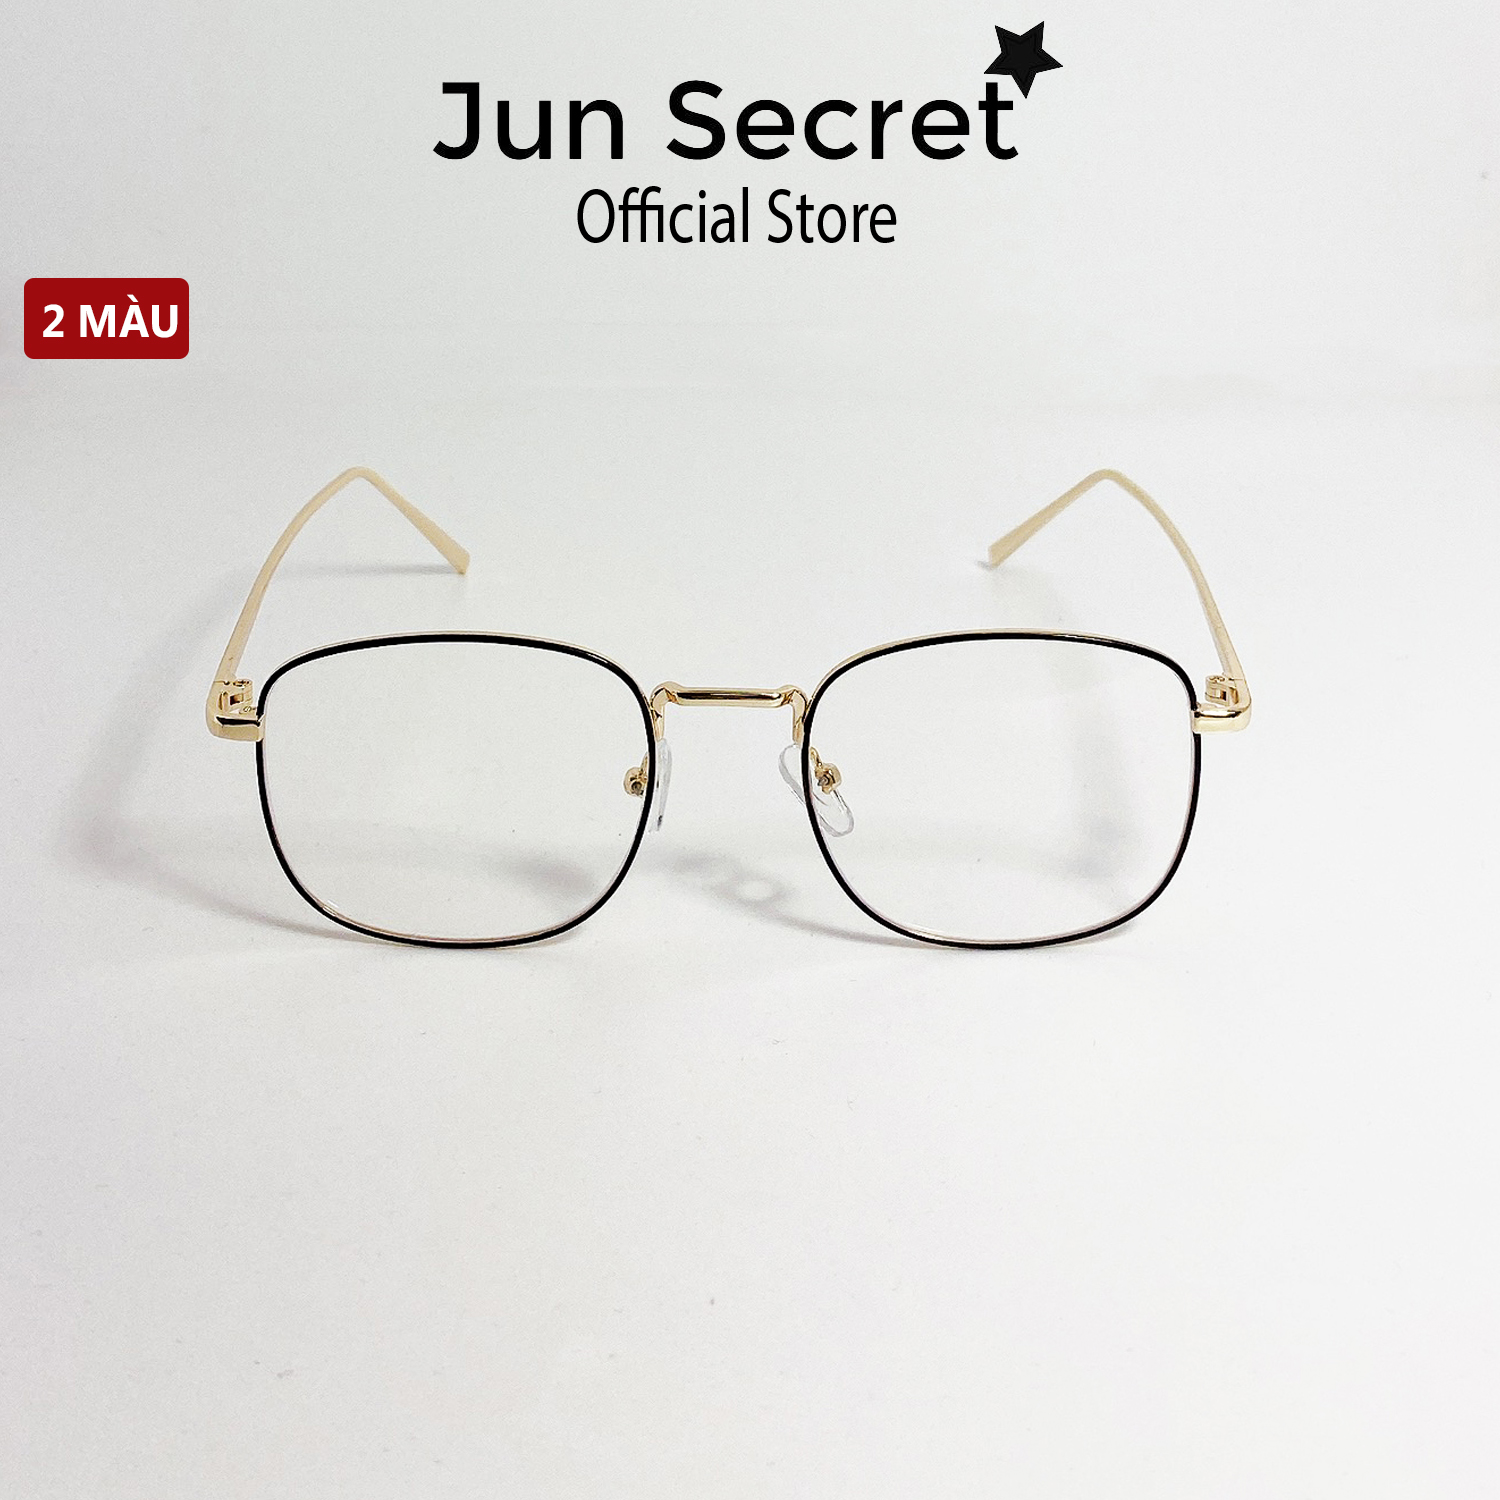 Gọng kính giả cận thời trang cao cấp dành cho cả nam và nữ Jun Secret gọng kim loại dáng tròn chống tia UV JS1705